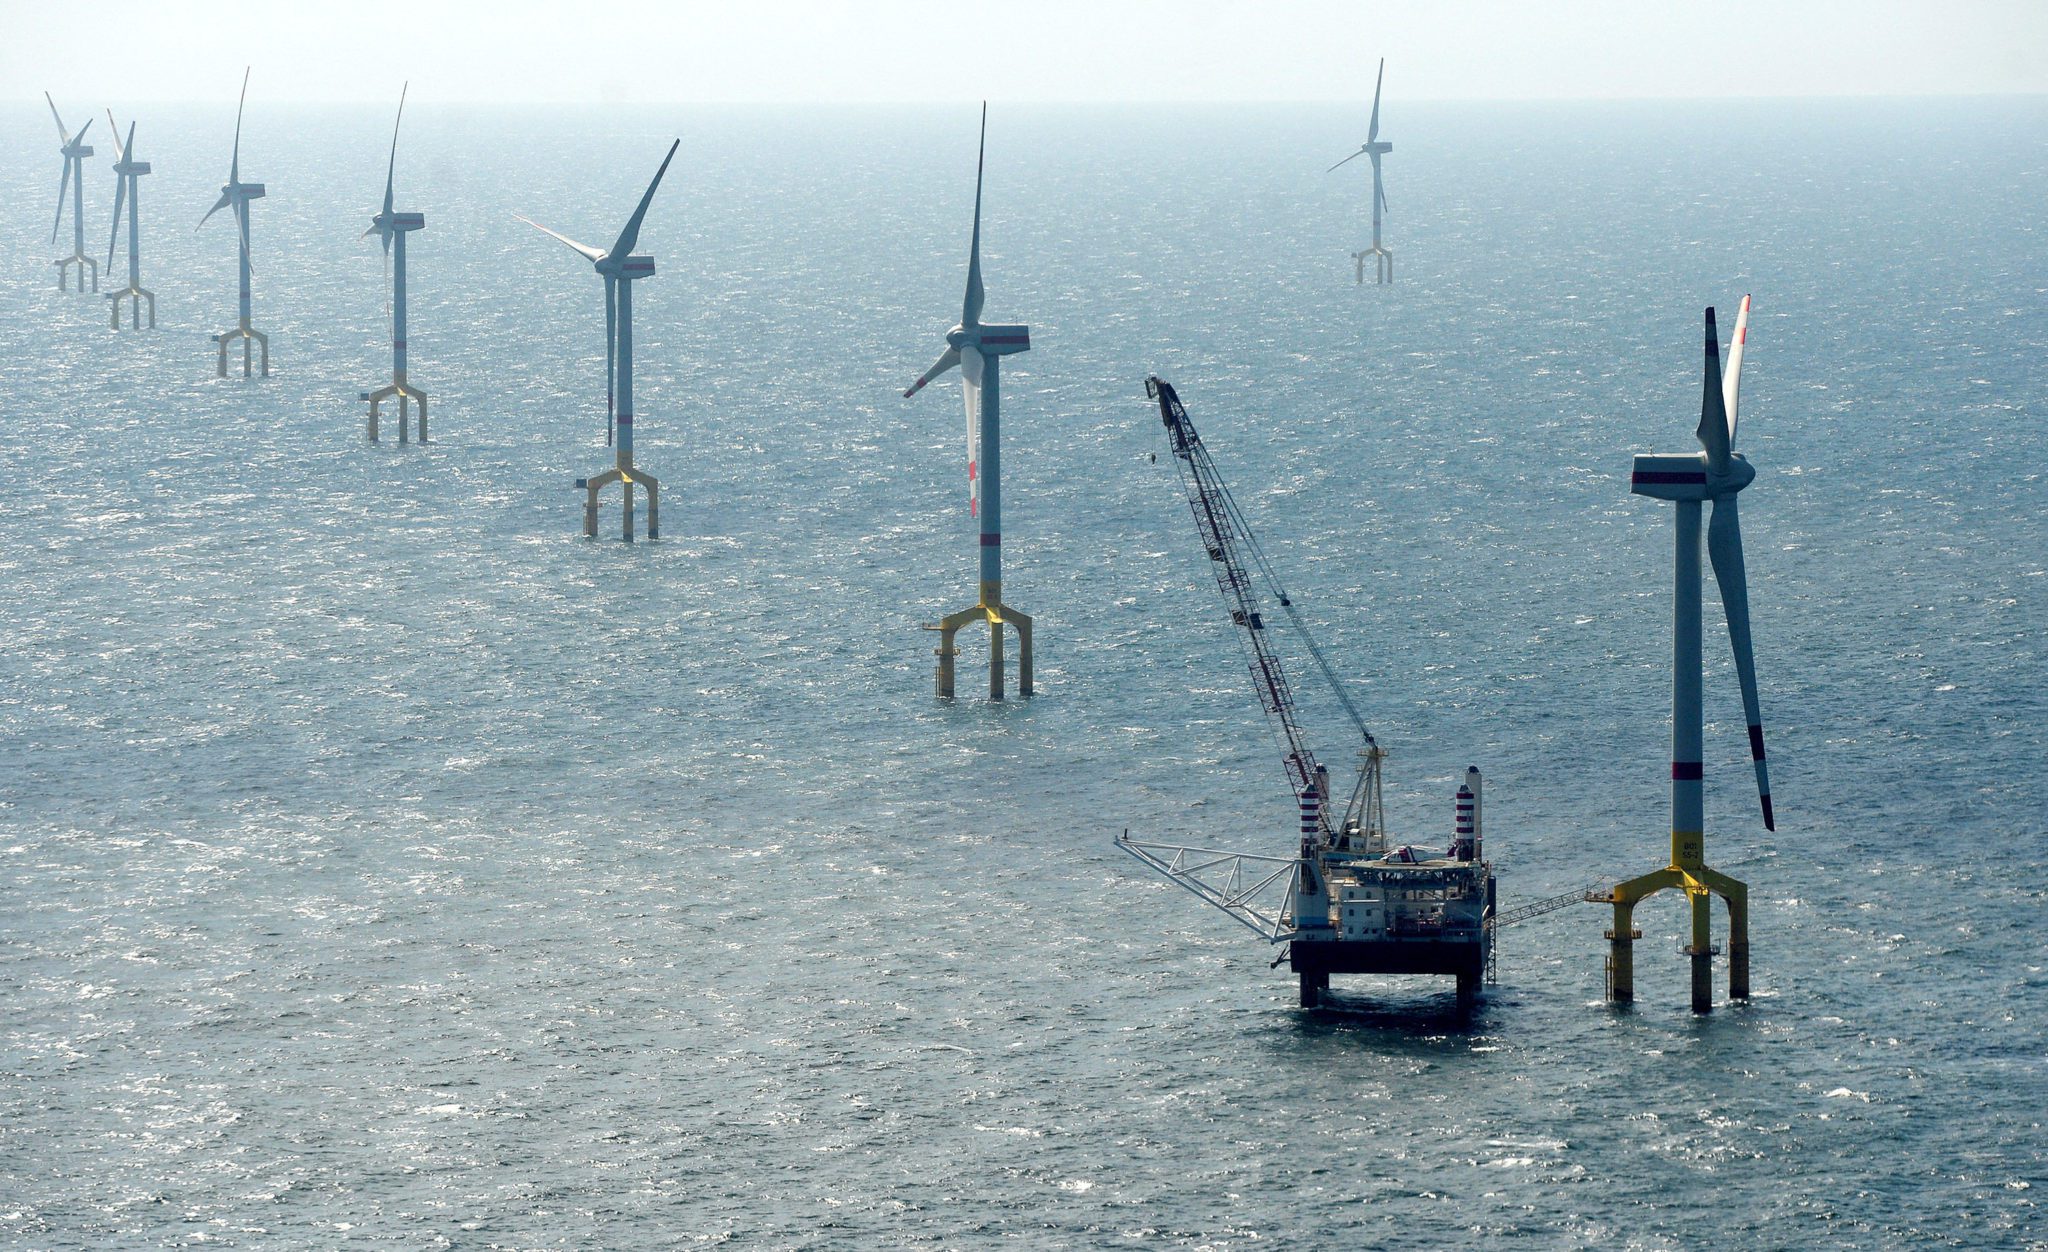 Les éoliennes du parc éolien BARD Offshore 1 sont photographiées à 100 kilomètres au nord-ouest de l'île allemande de Borkum, le 26 août 2013